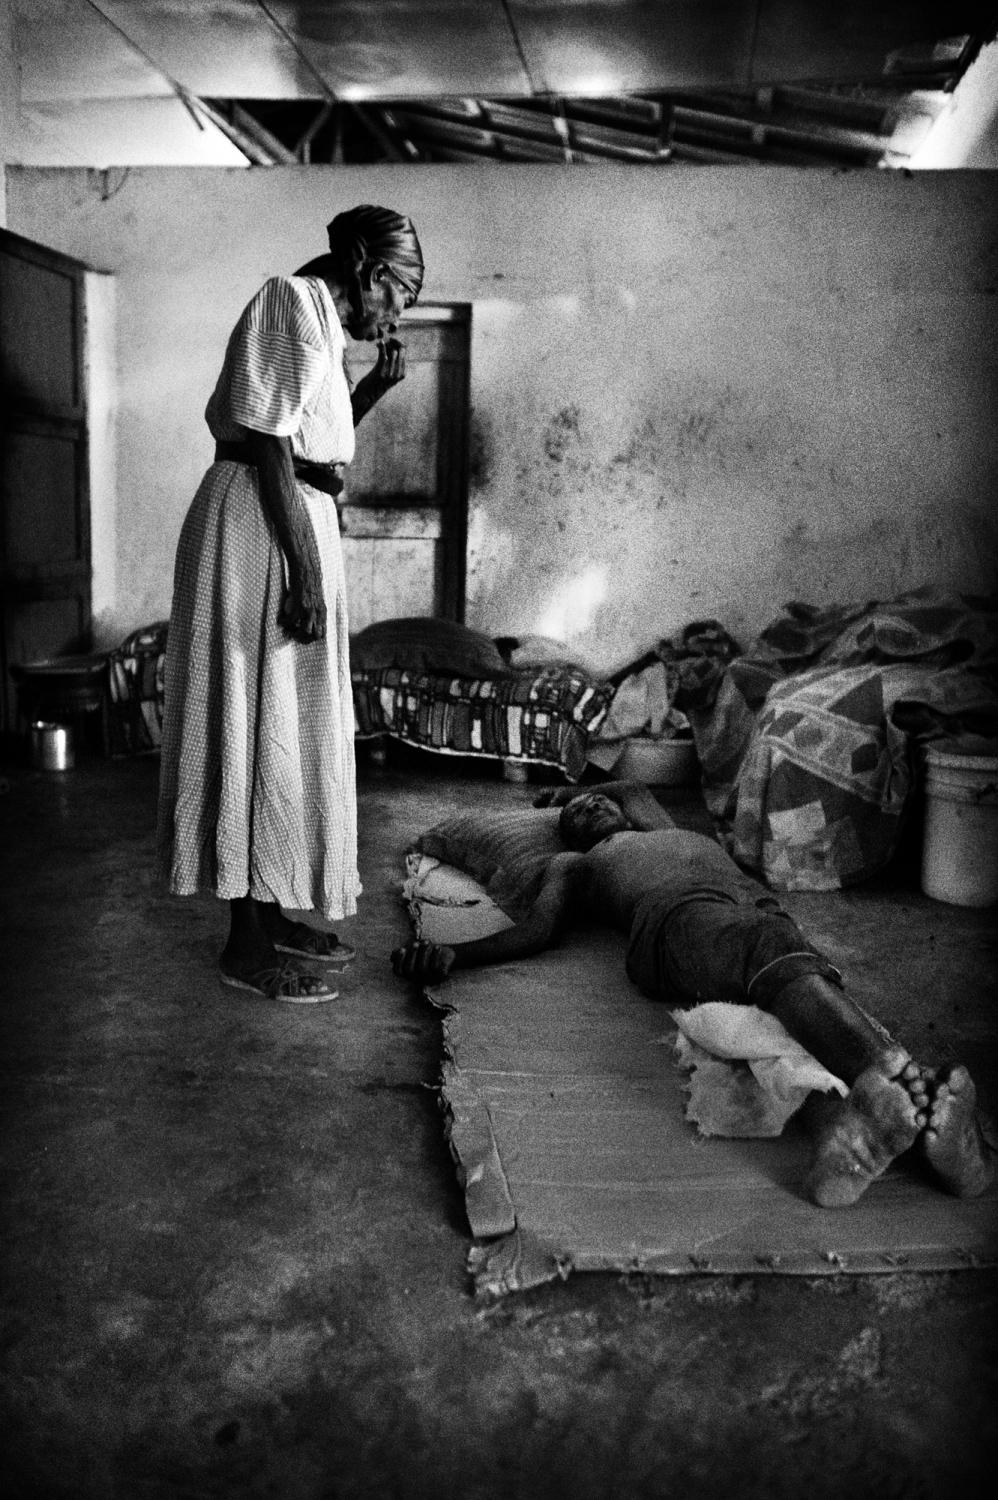 Hospice/ Haiti - Petit Guave, Haiti.
June 2010.
An inmate lying on the...